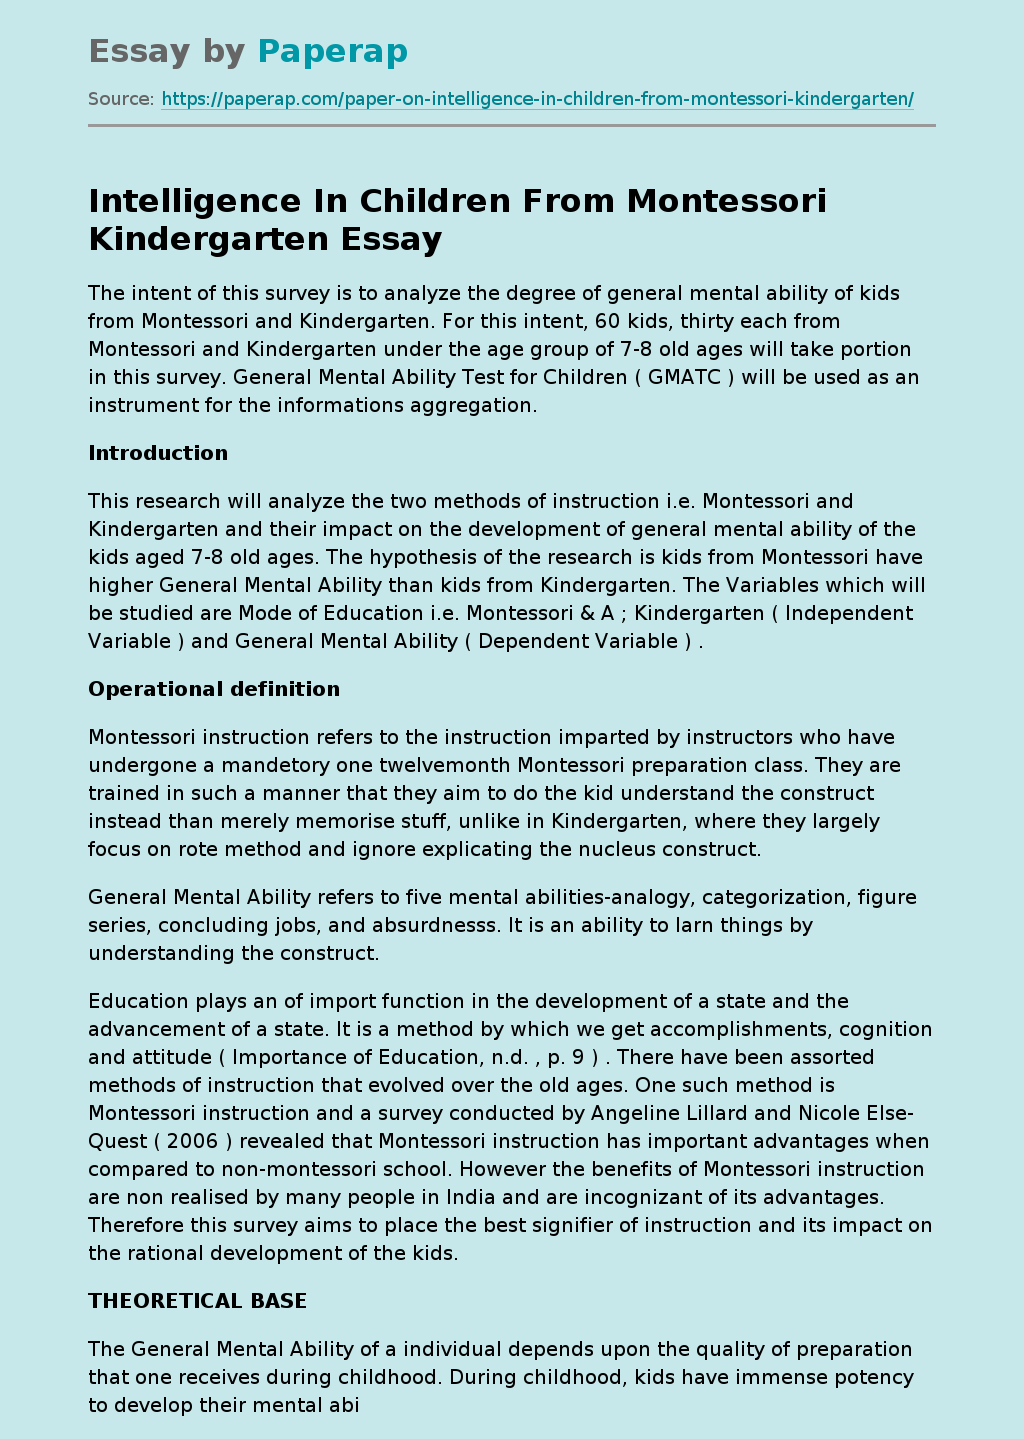 Intelligence In Children From Montessori Kindergarten